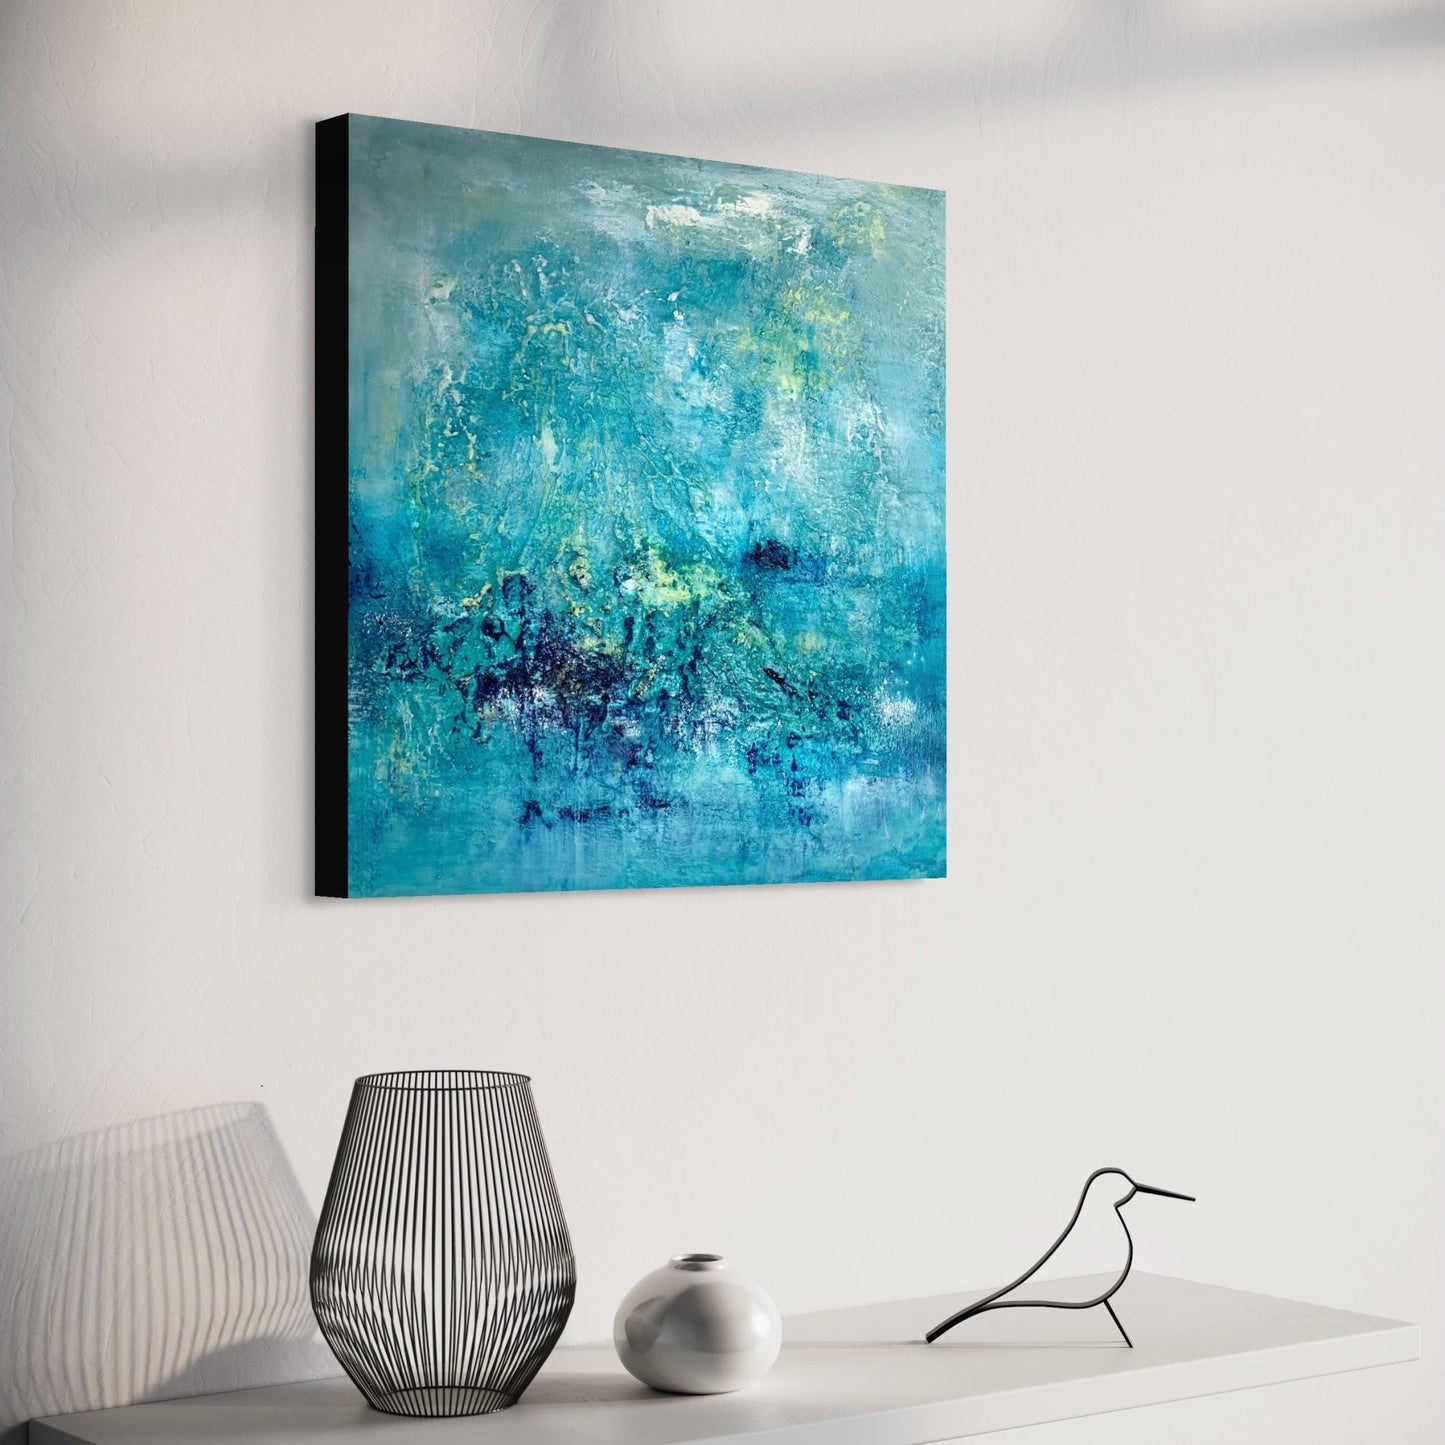 kunstwerk kaufen | Ocean of clouds 60x60 cm-unikate-kaufen-sabine-runge-münchen